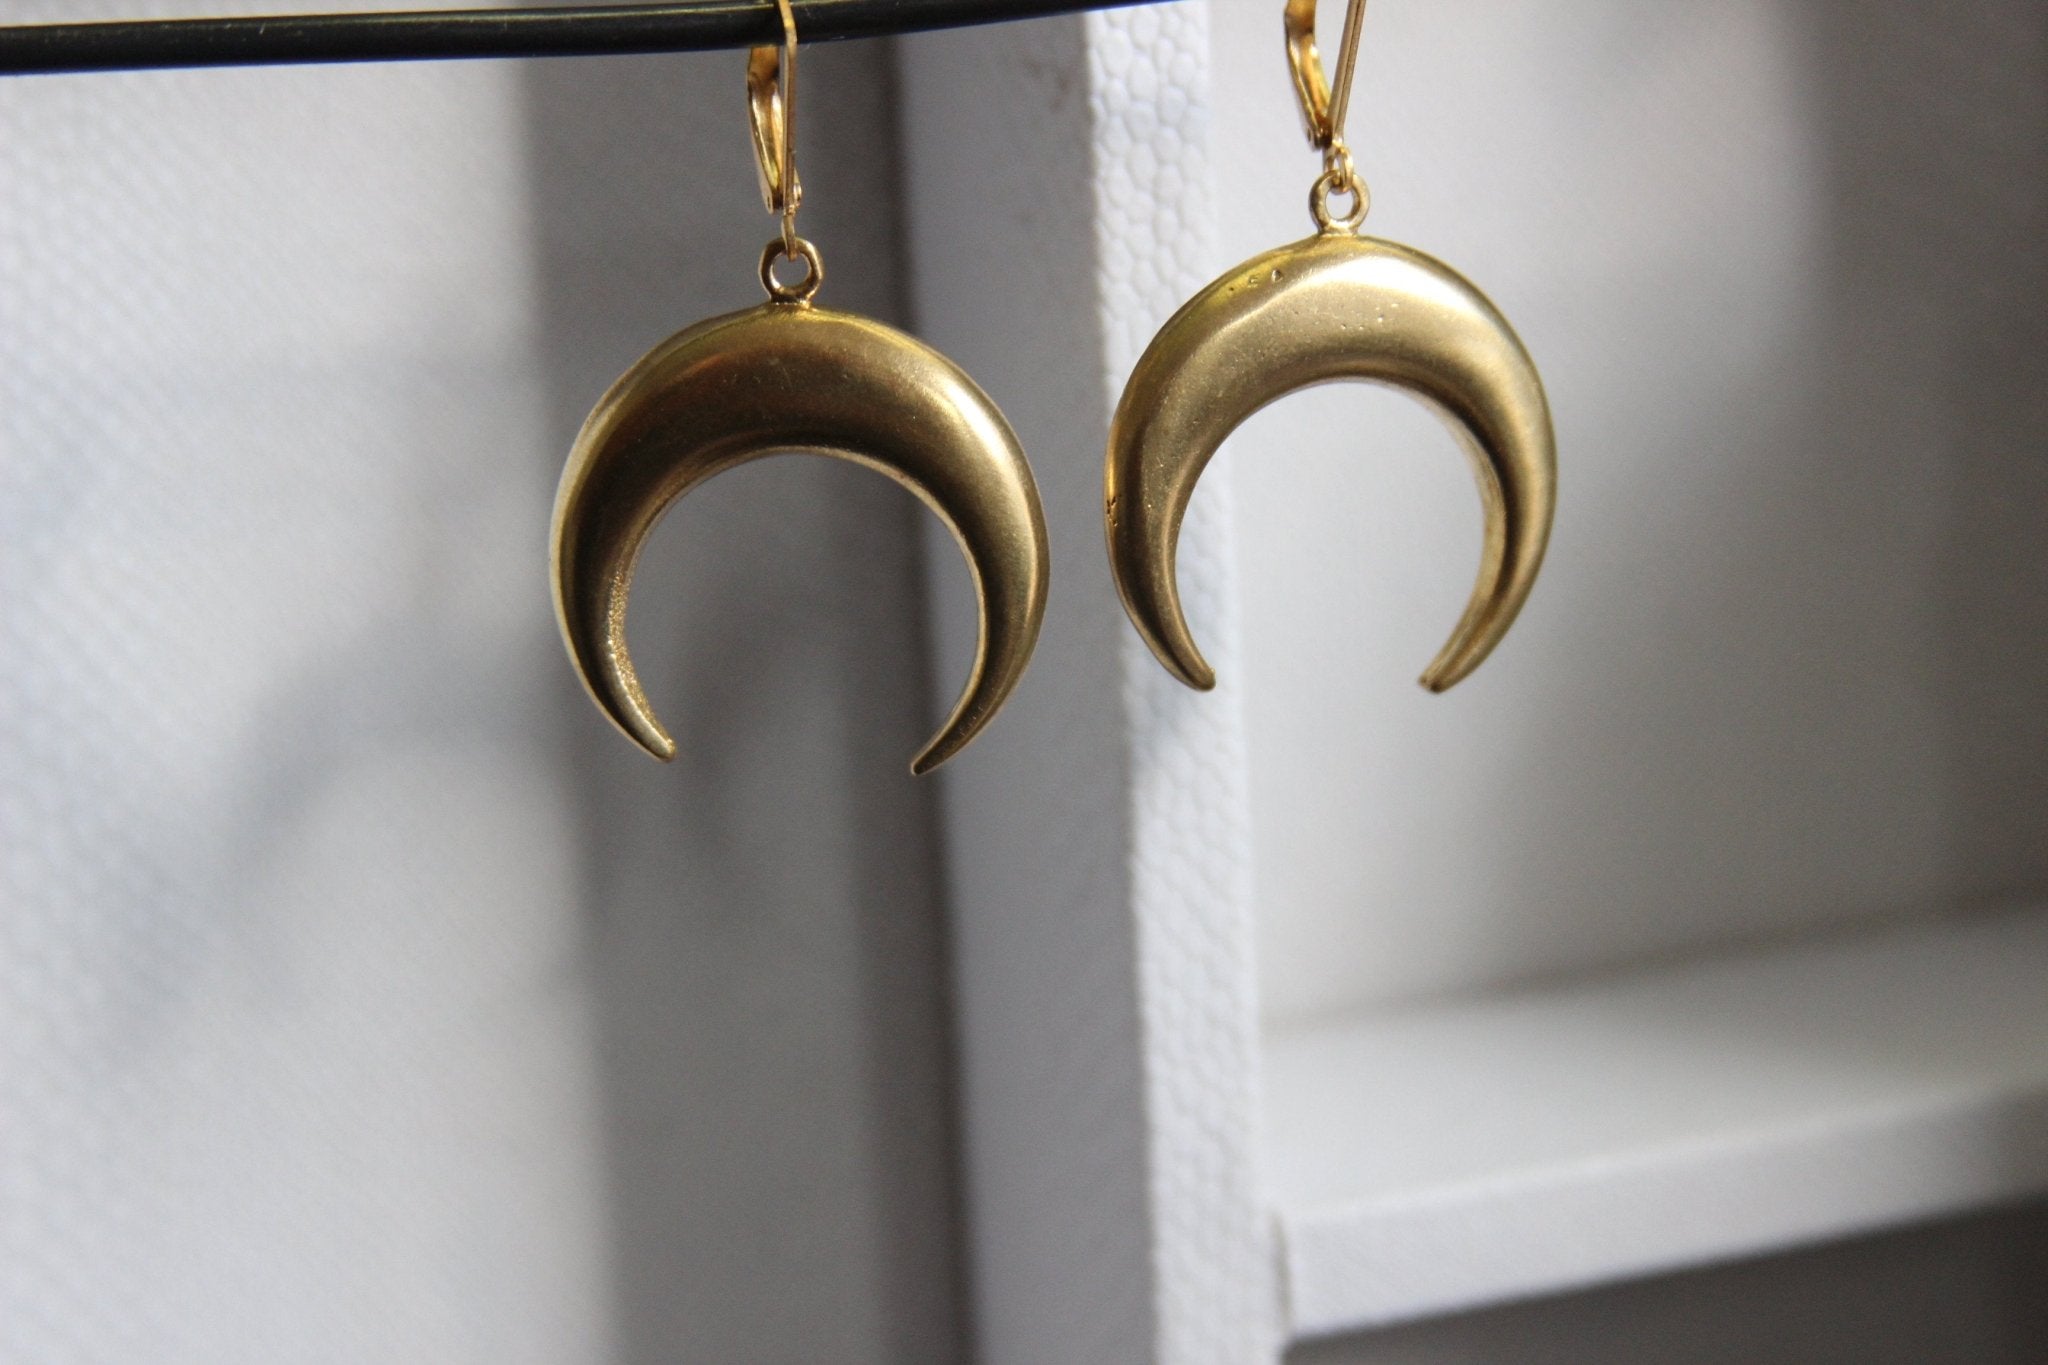 Waxing Moon Brass Earrings - We Love Brass